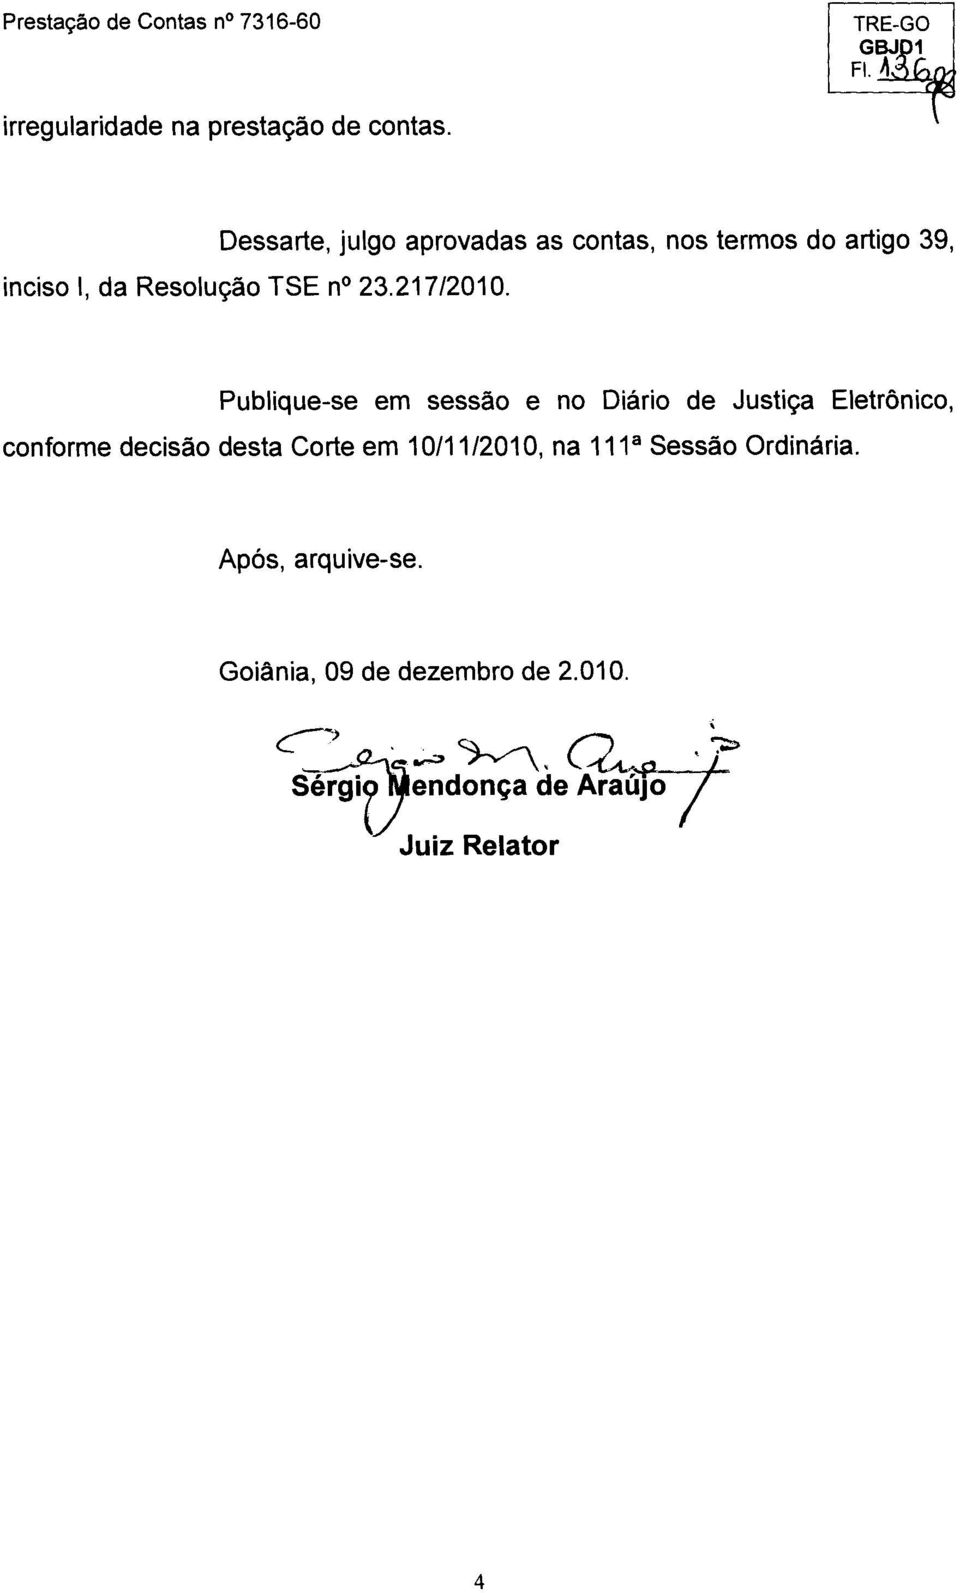 Publique-se em sessao e no Diario de Justica Eletremico, conforme decisão desta Corte em 10/11/2010, na